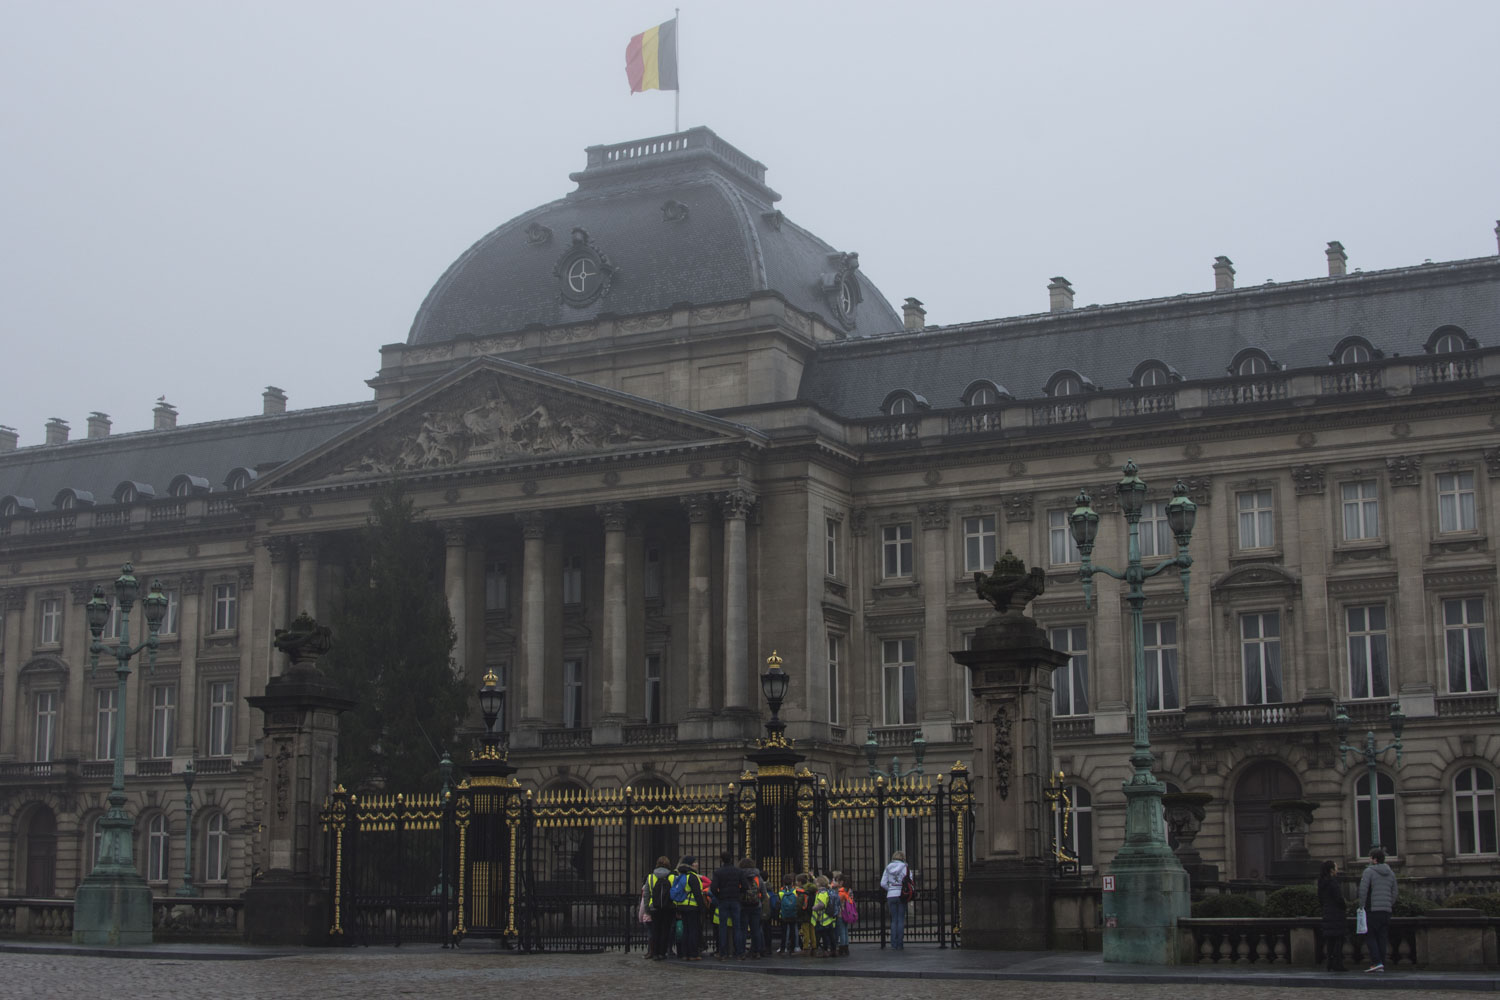 Le Palais Royal 